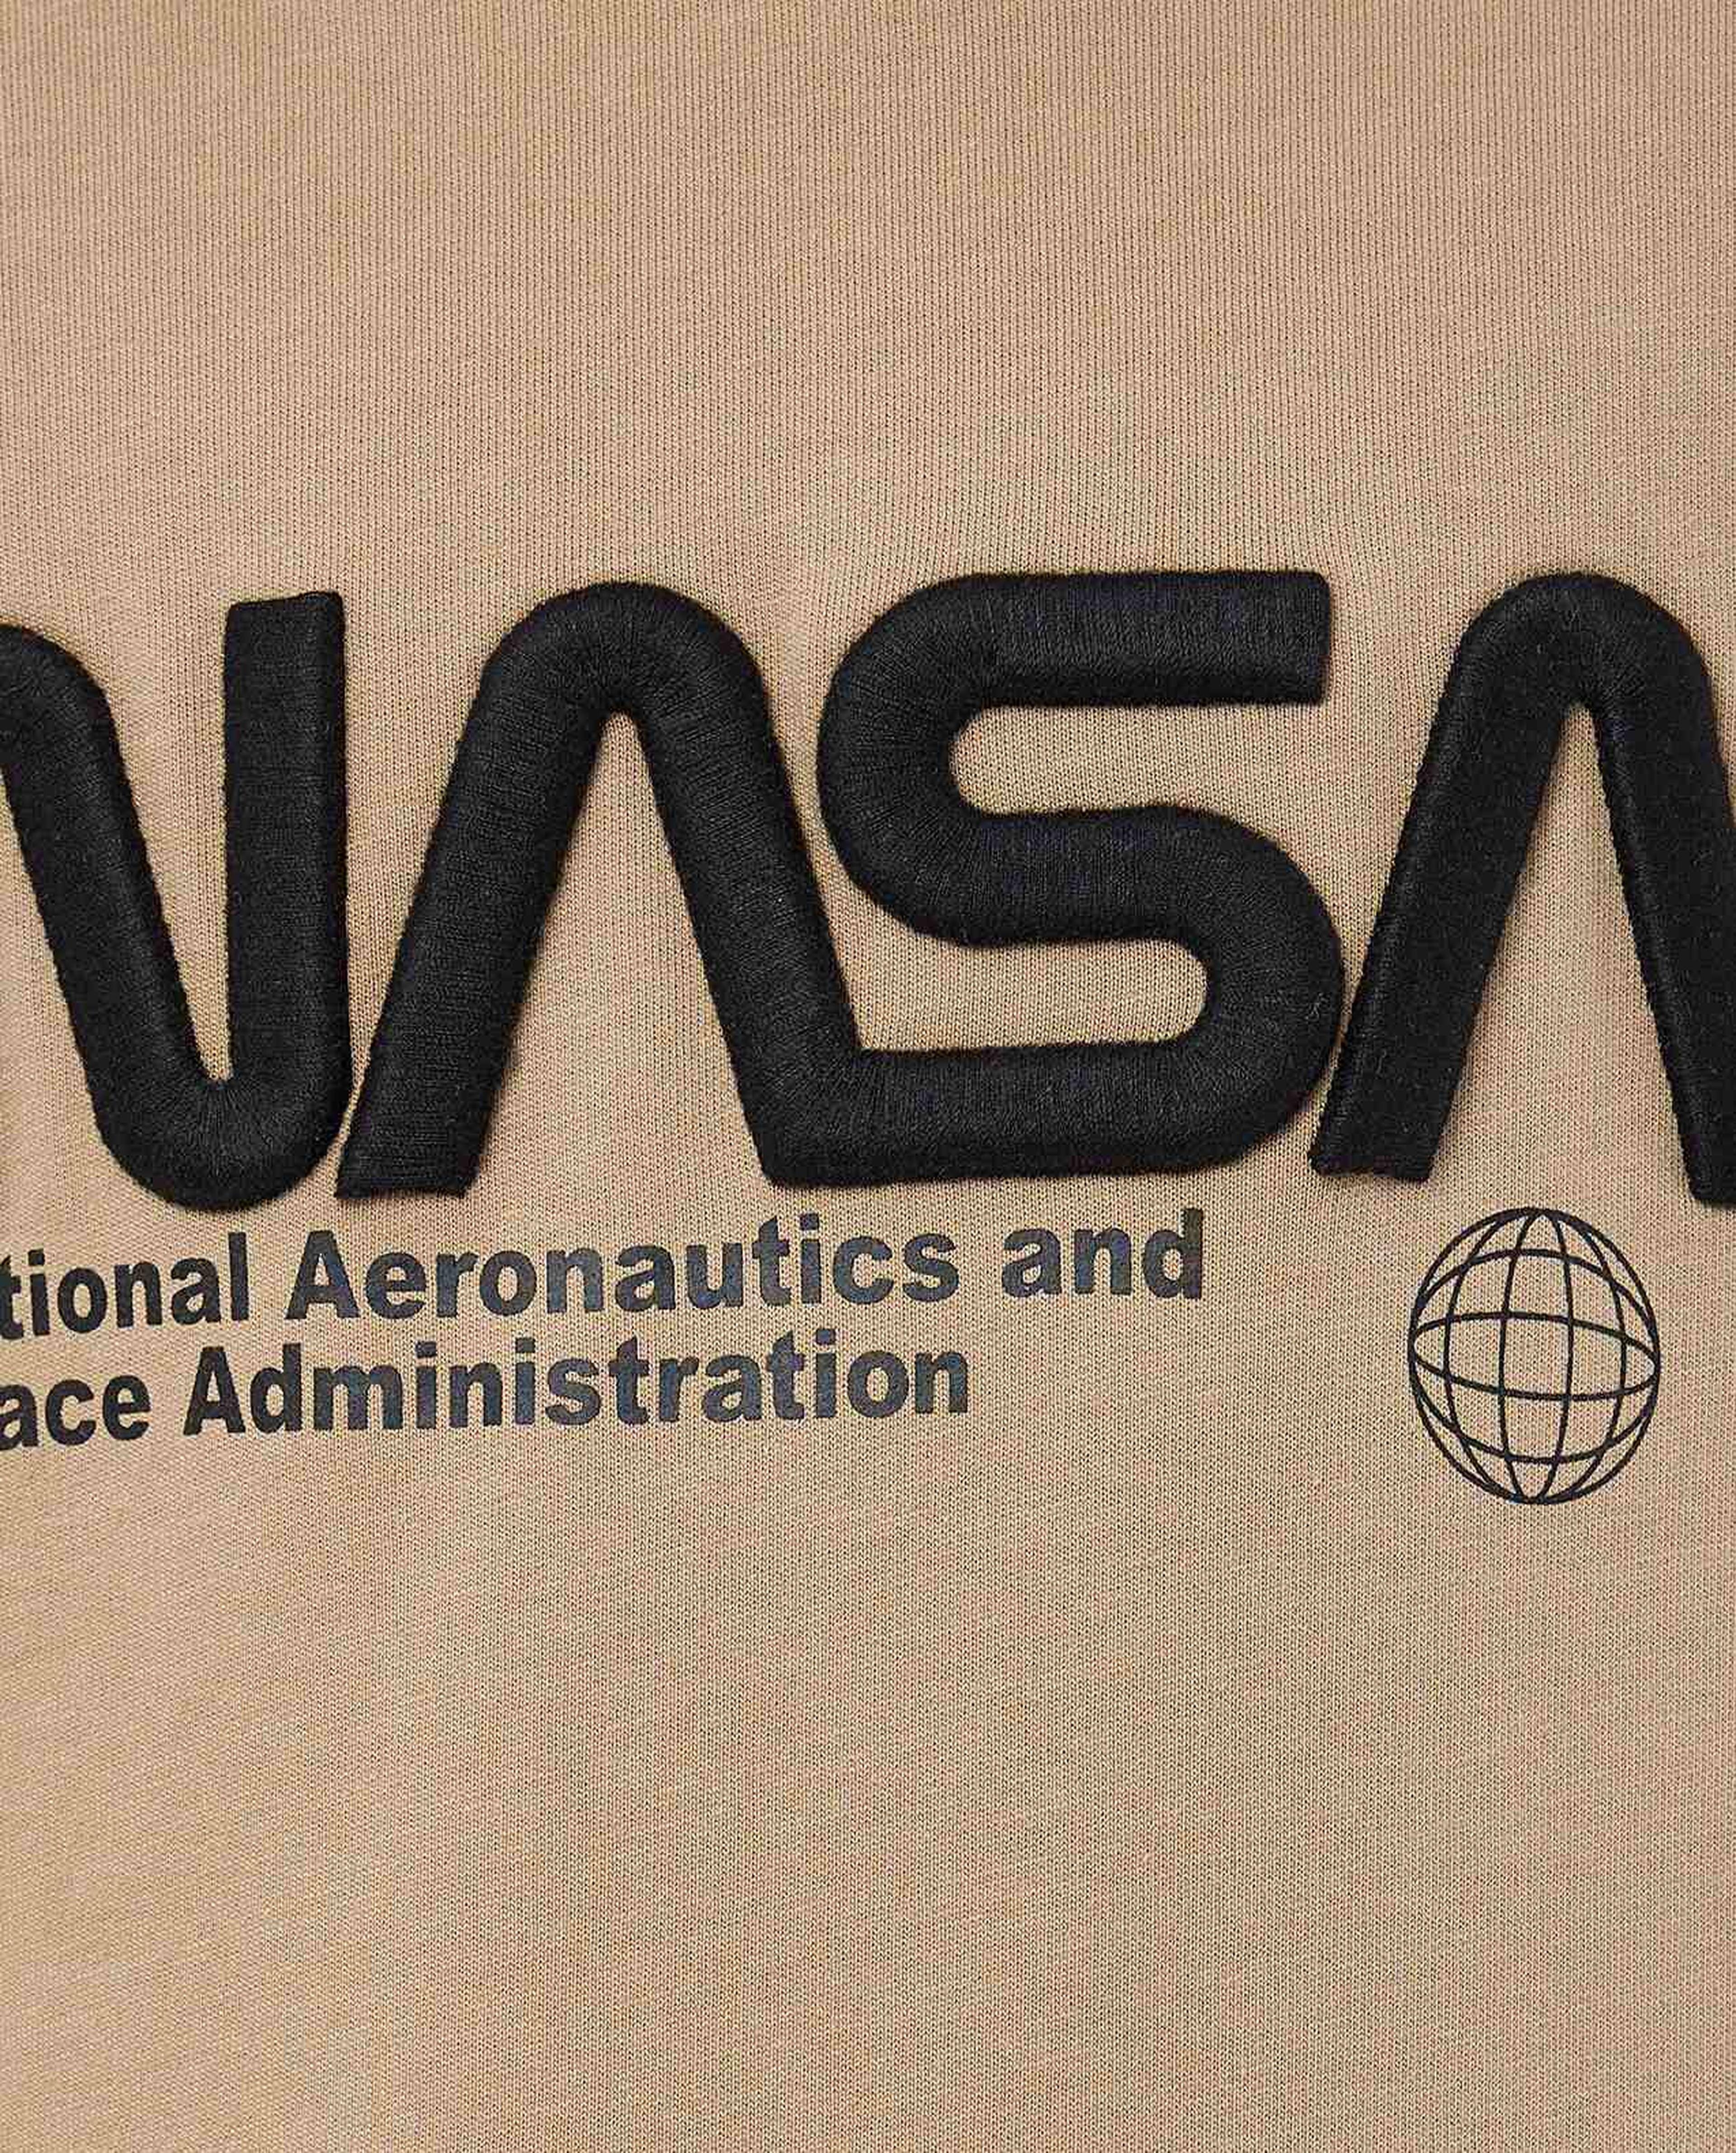 NASA Printed Hoodie with Long Sleeves